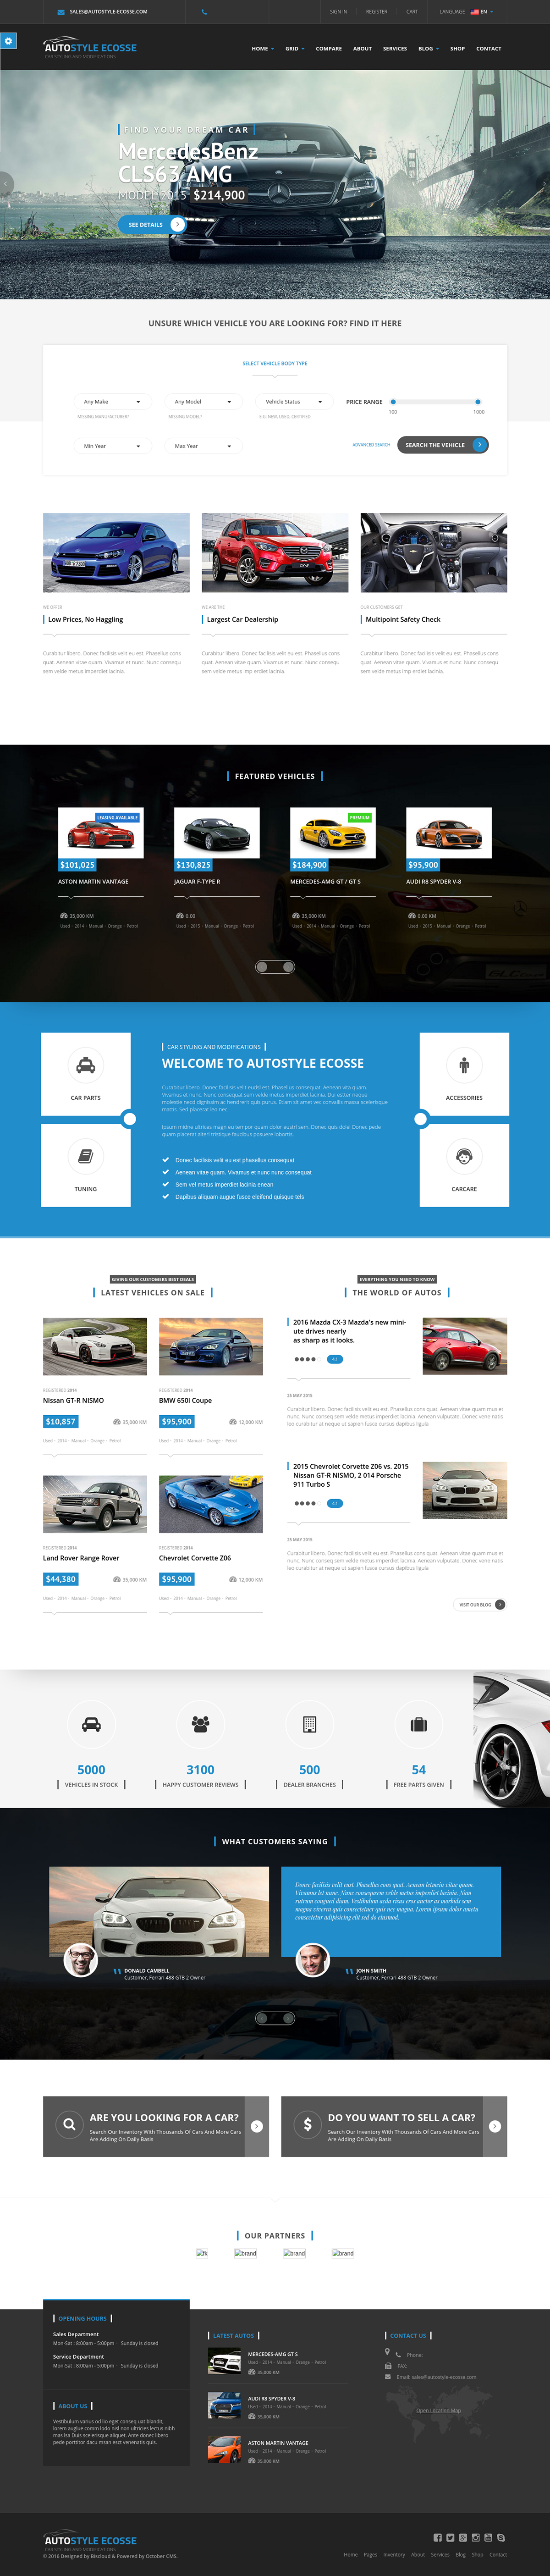 Motorsport Web Design  flatfile